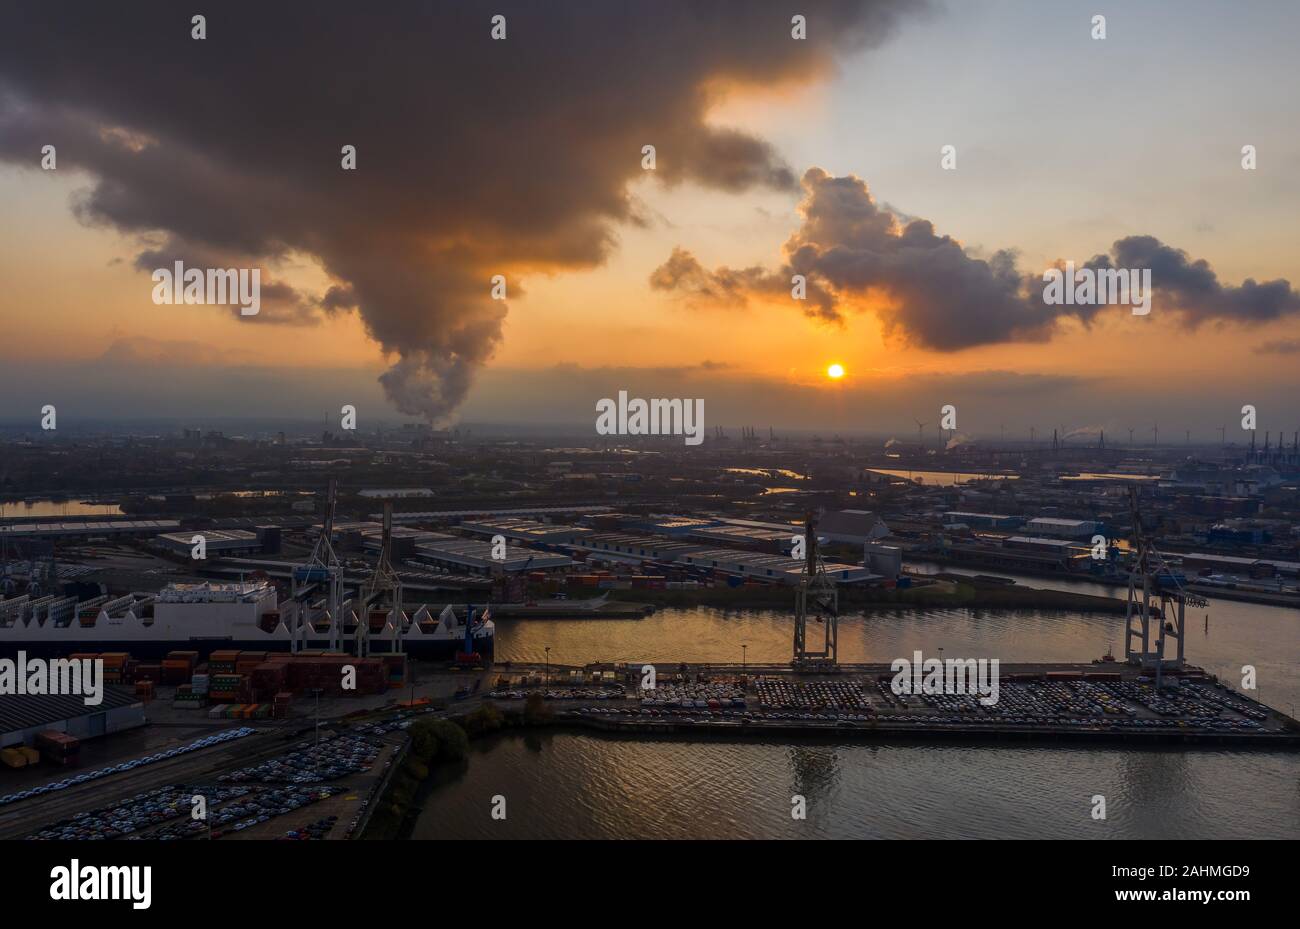 Drone aérien vue du port de Hambourg pendant le coucher du soleil avec de la fumée et des nuages lourds sur les chantiers par la mer Banque D'Images